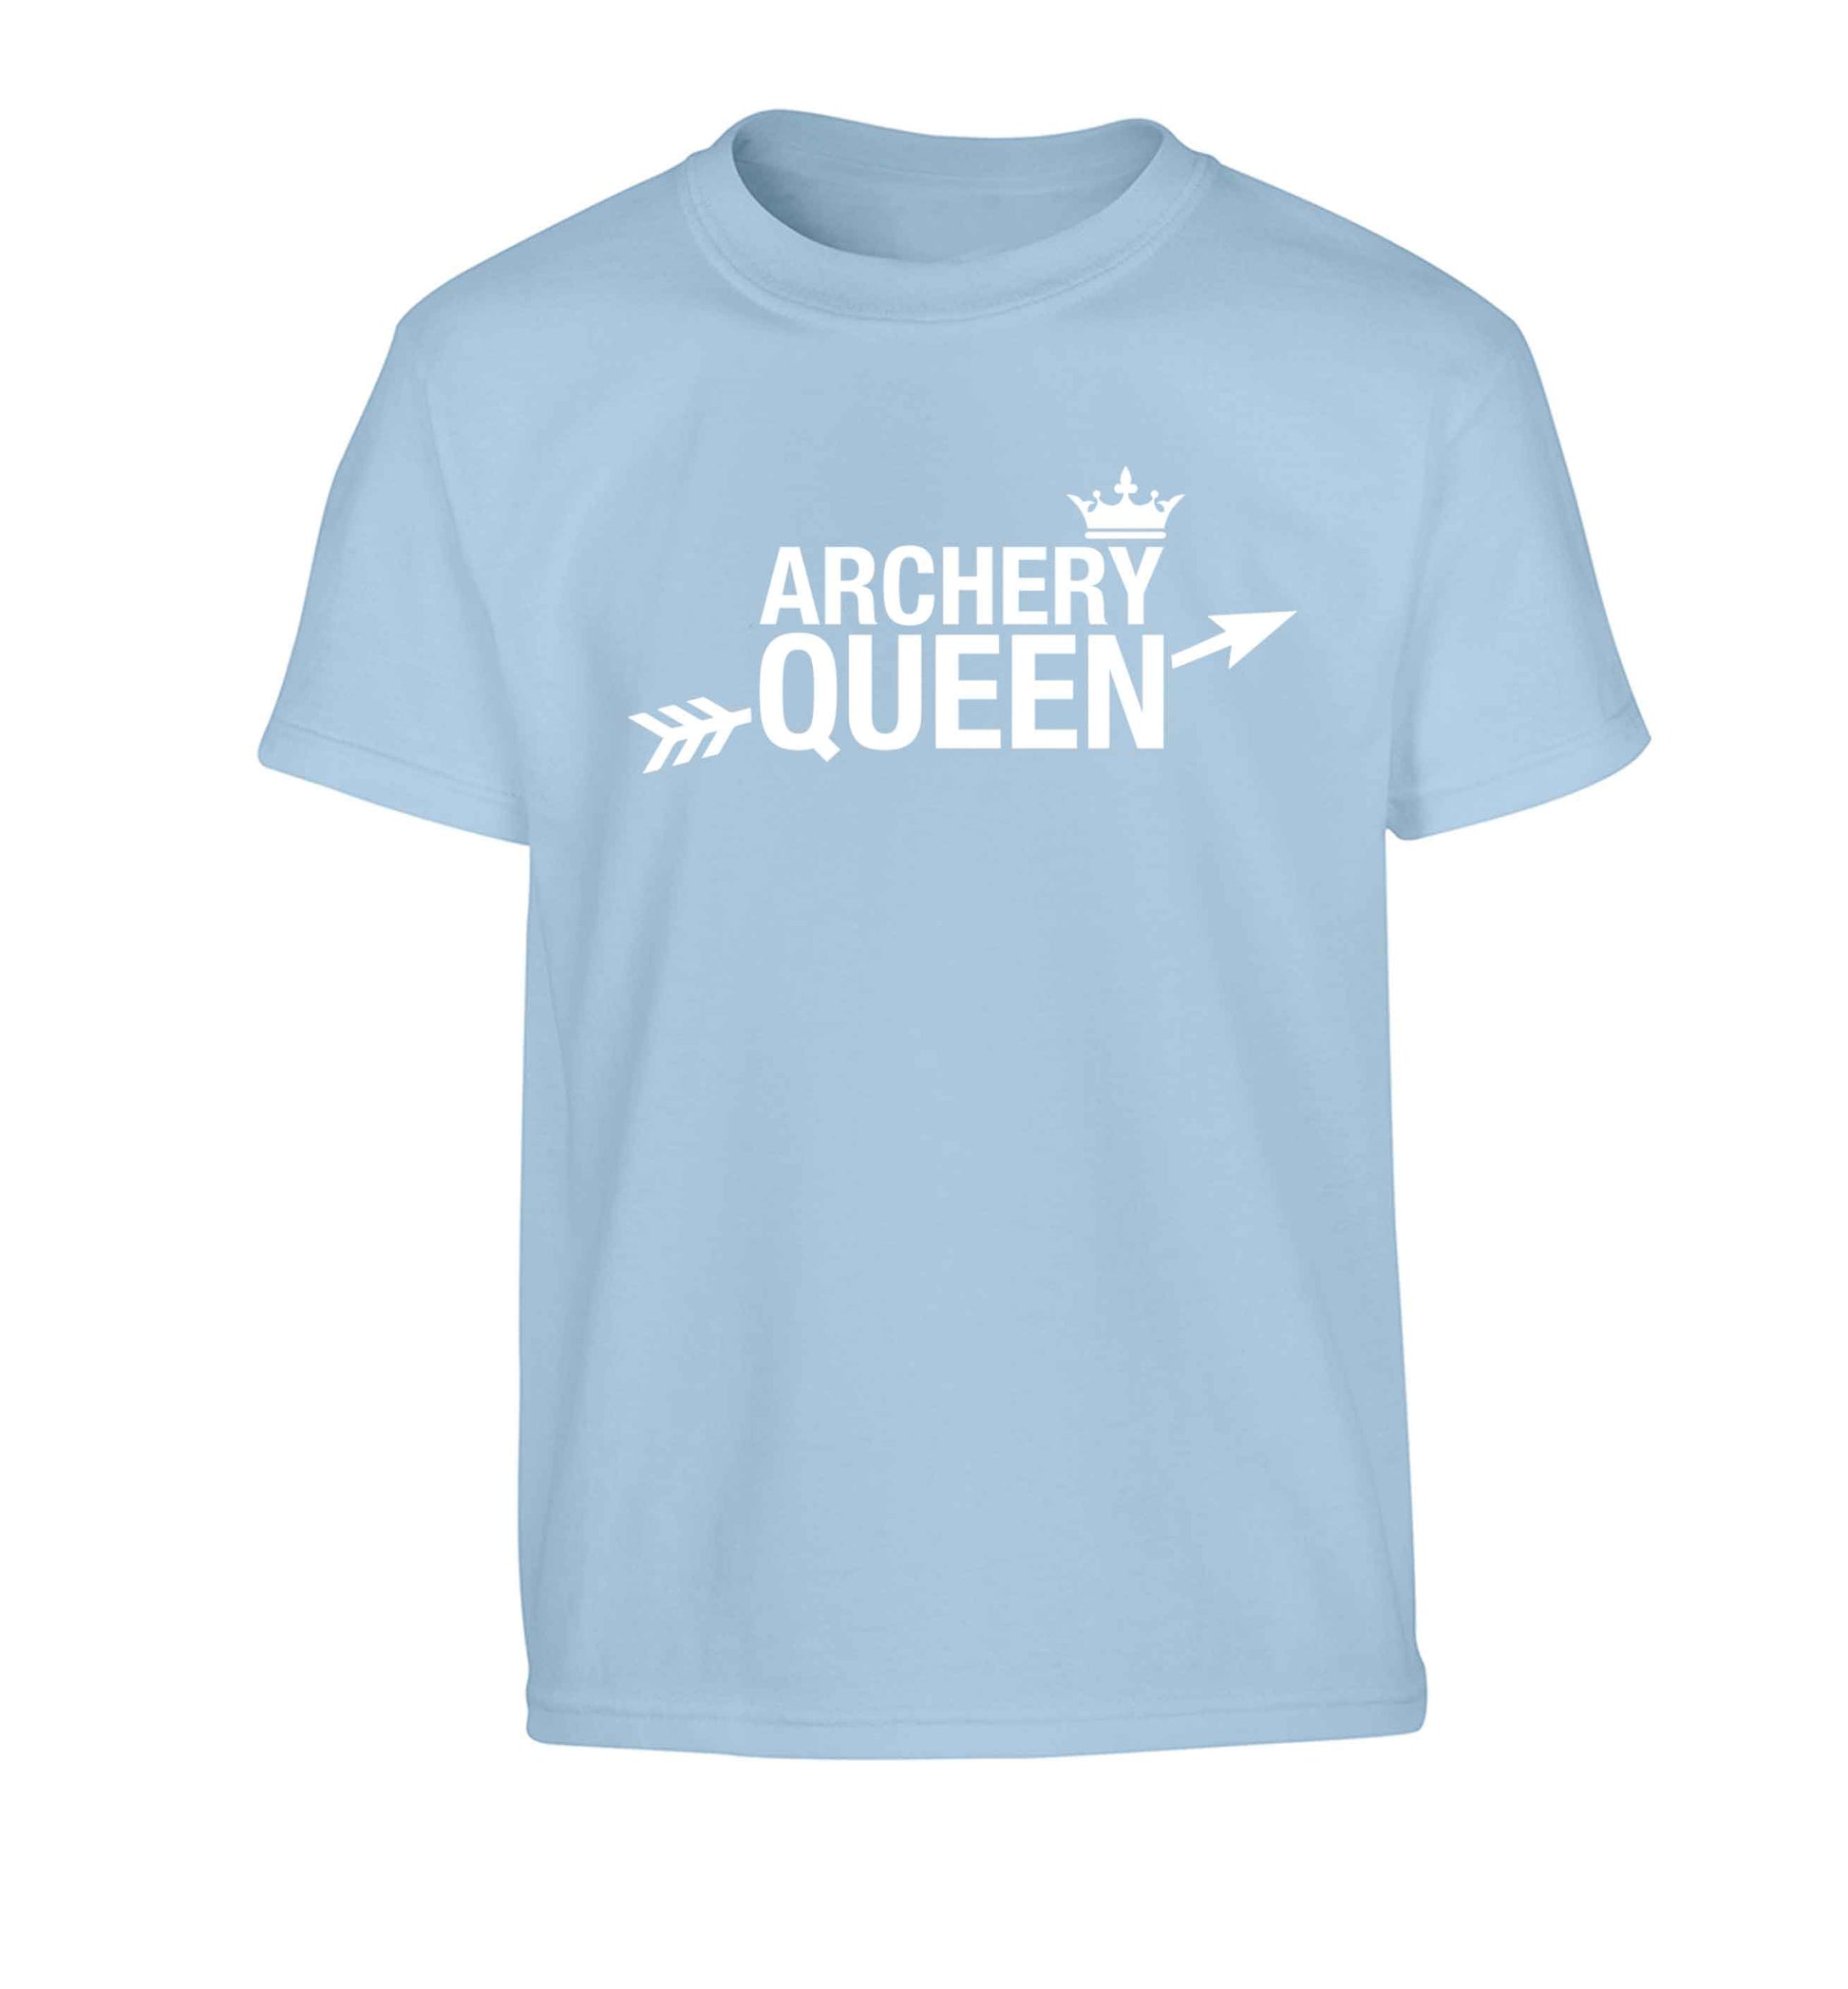 Archery queen Children's light blue Tshirt 12-13 Years